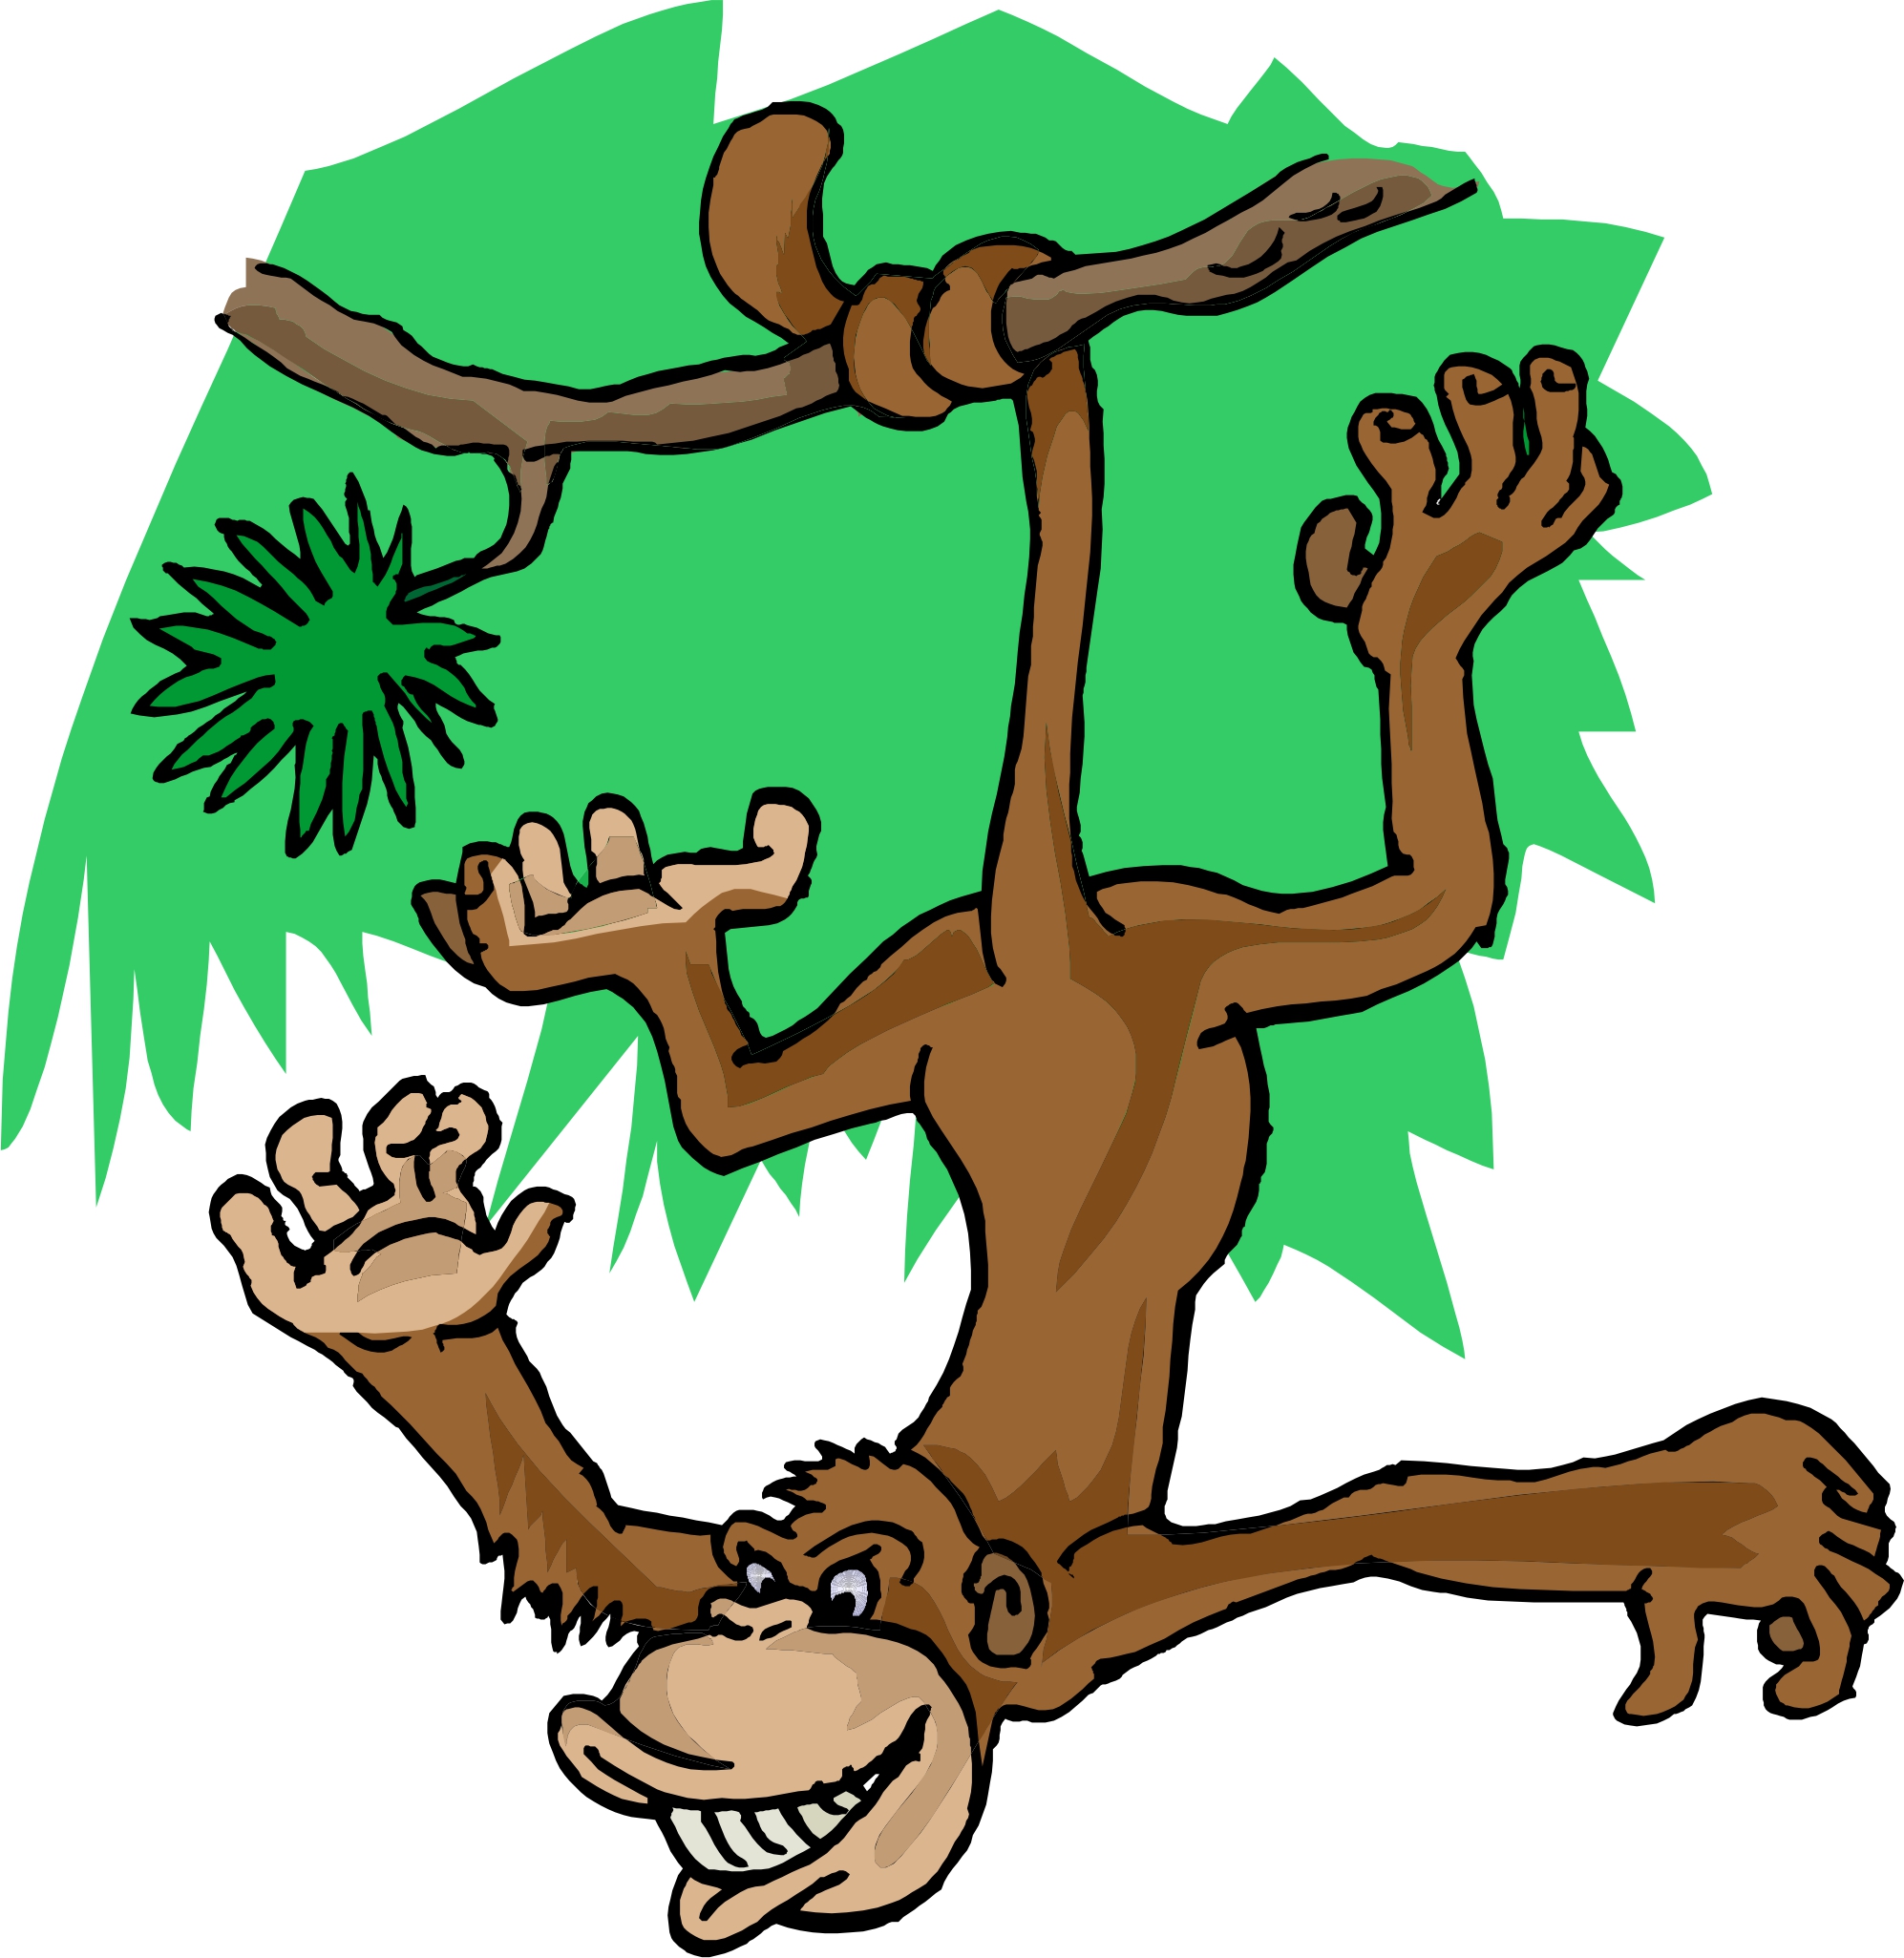 free clipart of cartoon monkeys - photo #41